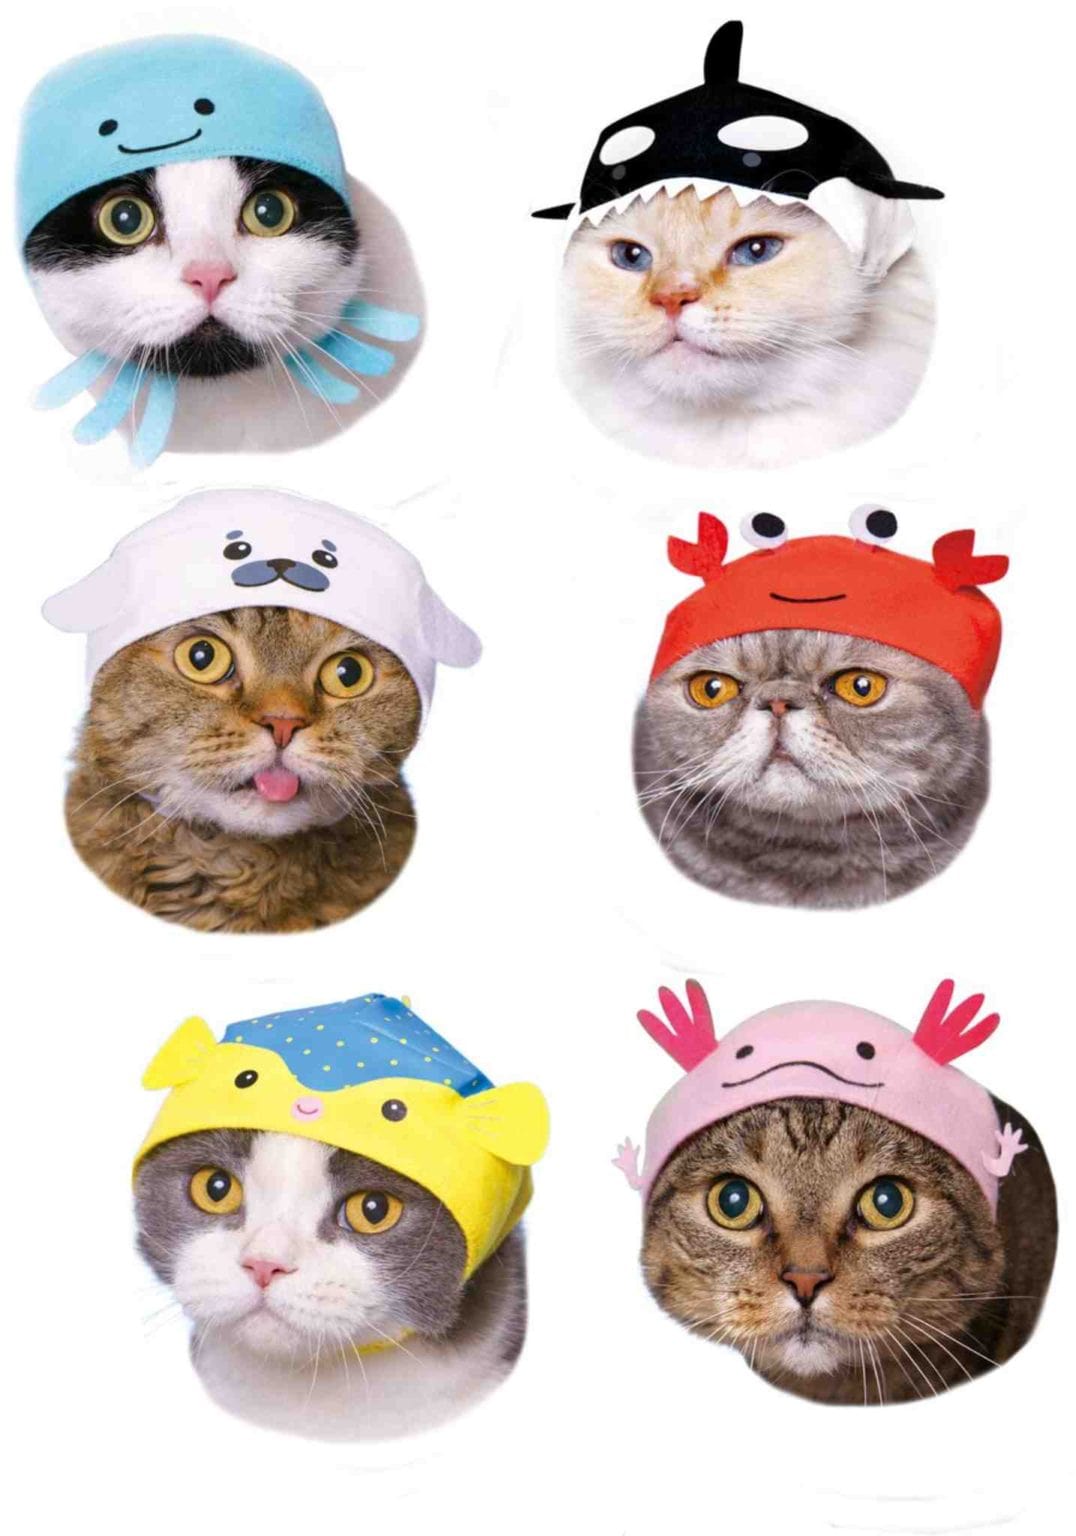 Clever Idiots Aquarium V2 Cat Cap Surprise Box Kawaii Gifts 4580045301233